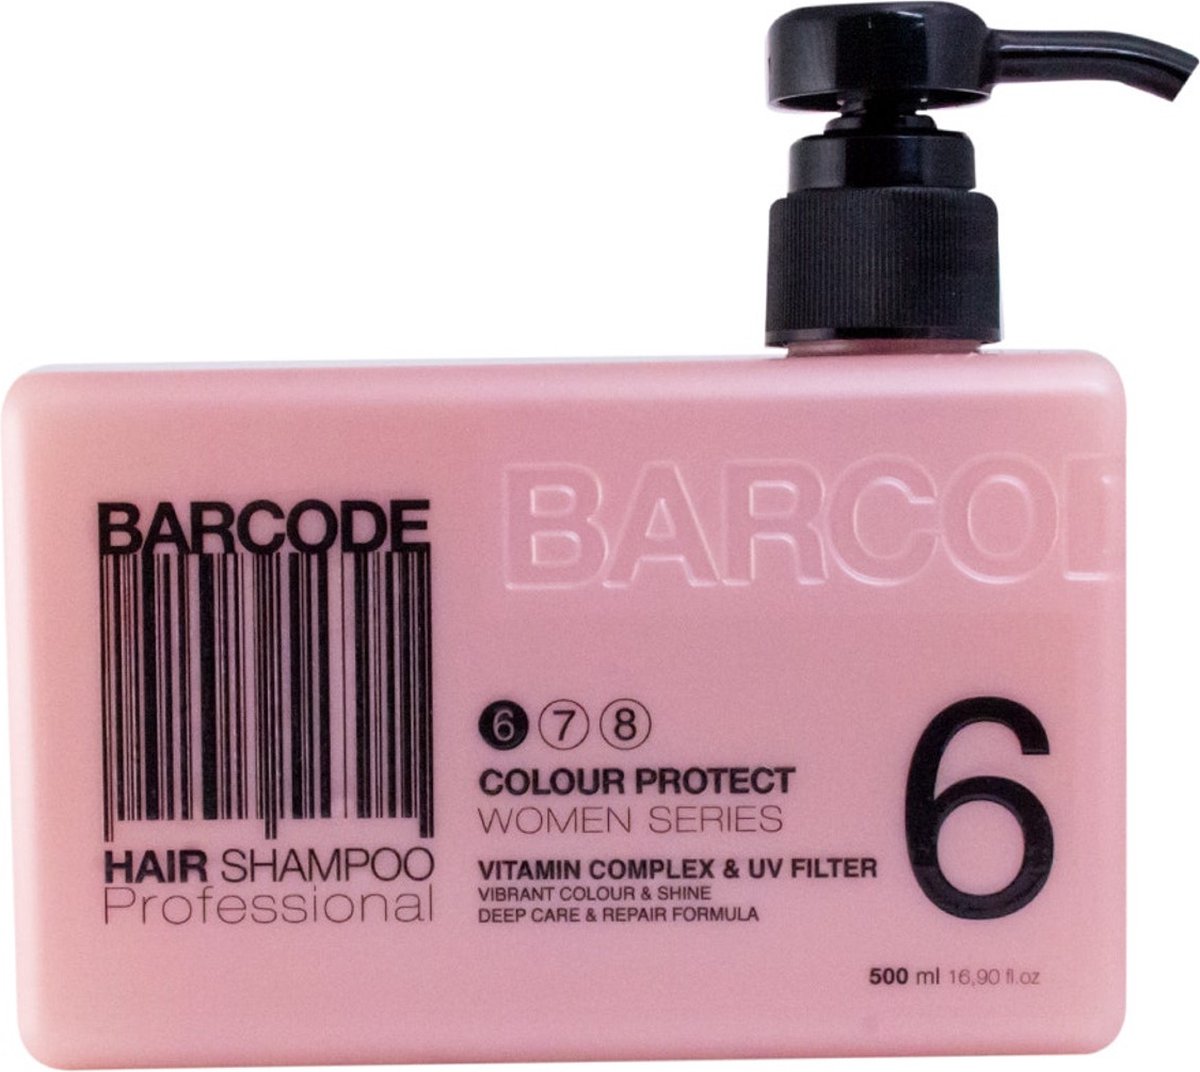 BARCODE - Hair Shampoo - Colour Protect - 500ml